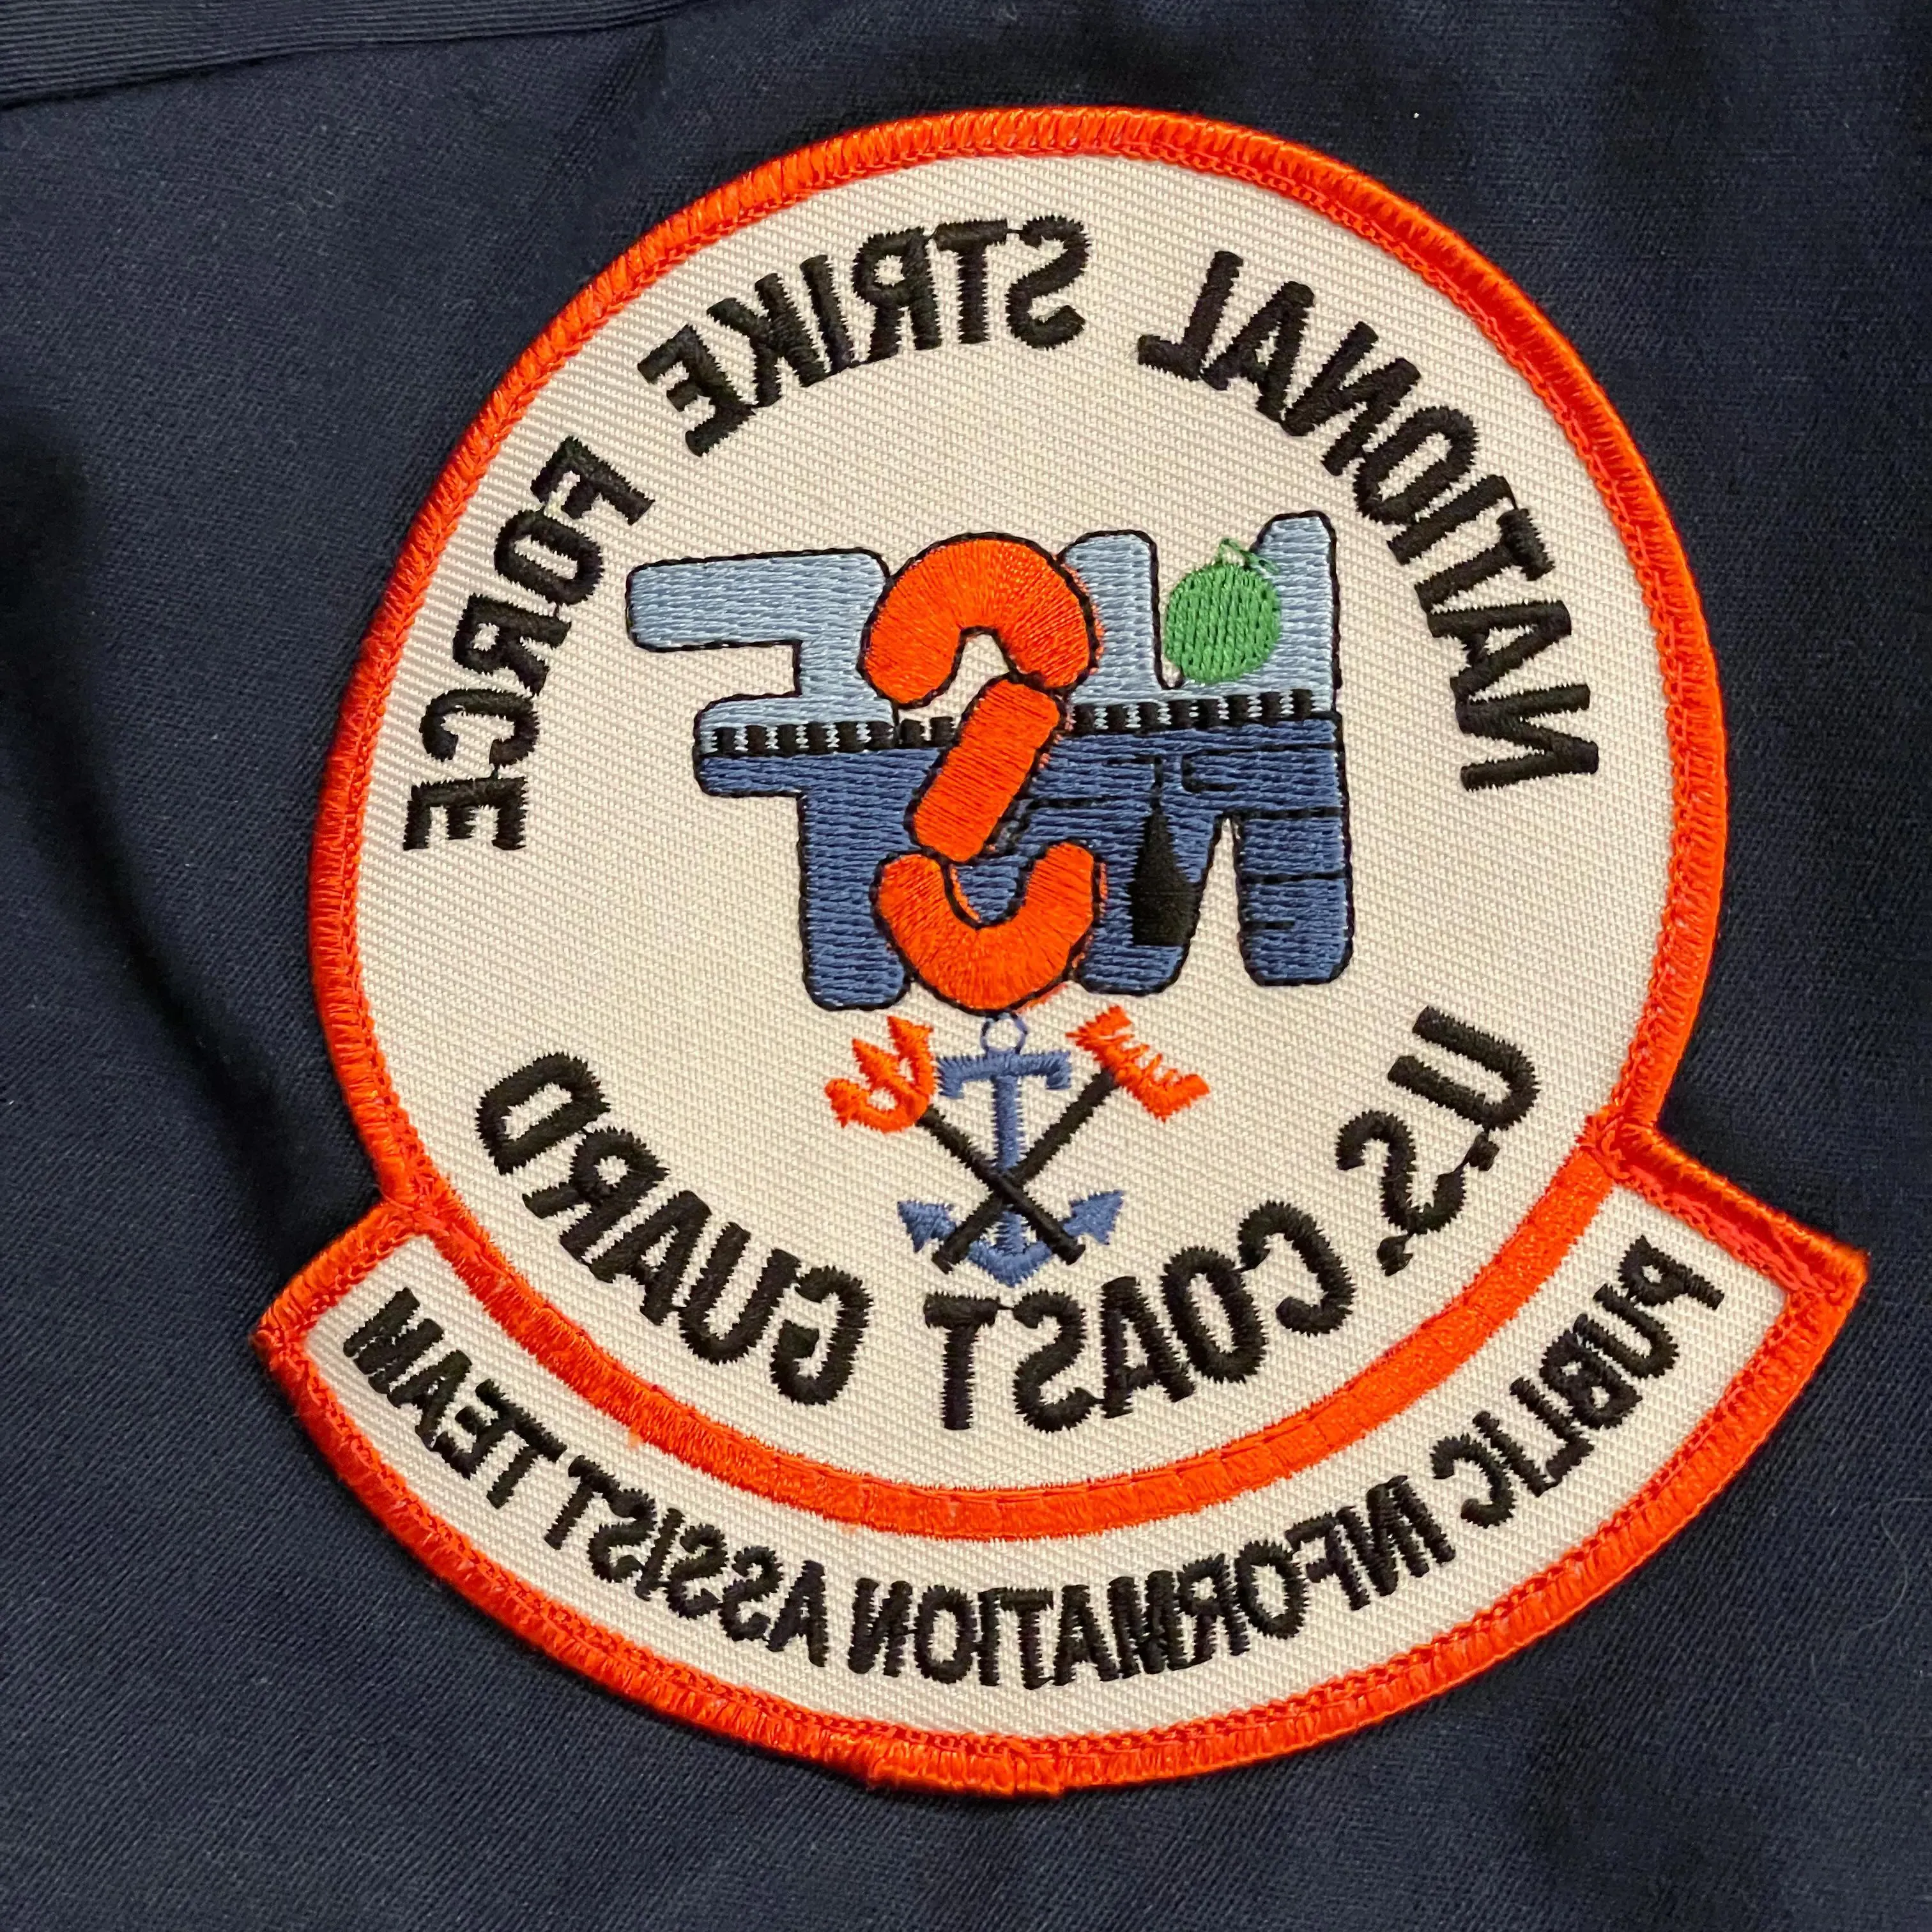 制服上的徽章，上面写着“美国国家打击部队”.S. 海岸警卫队. 新闻协助小组”